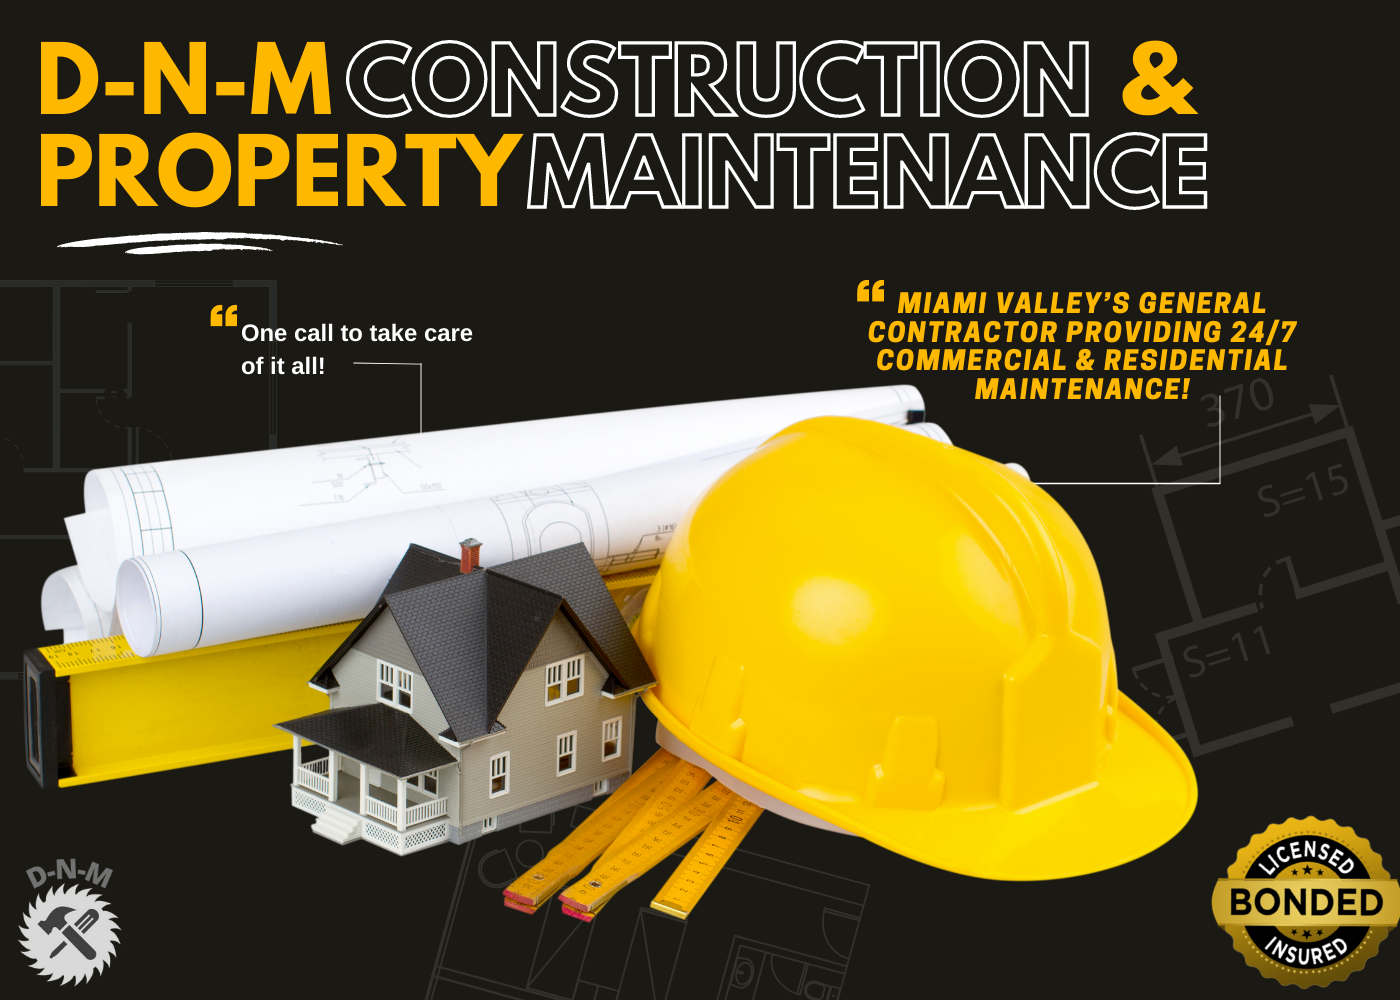 D-N-M Construction & Property Maintenance